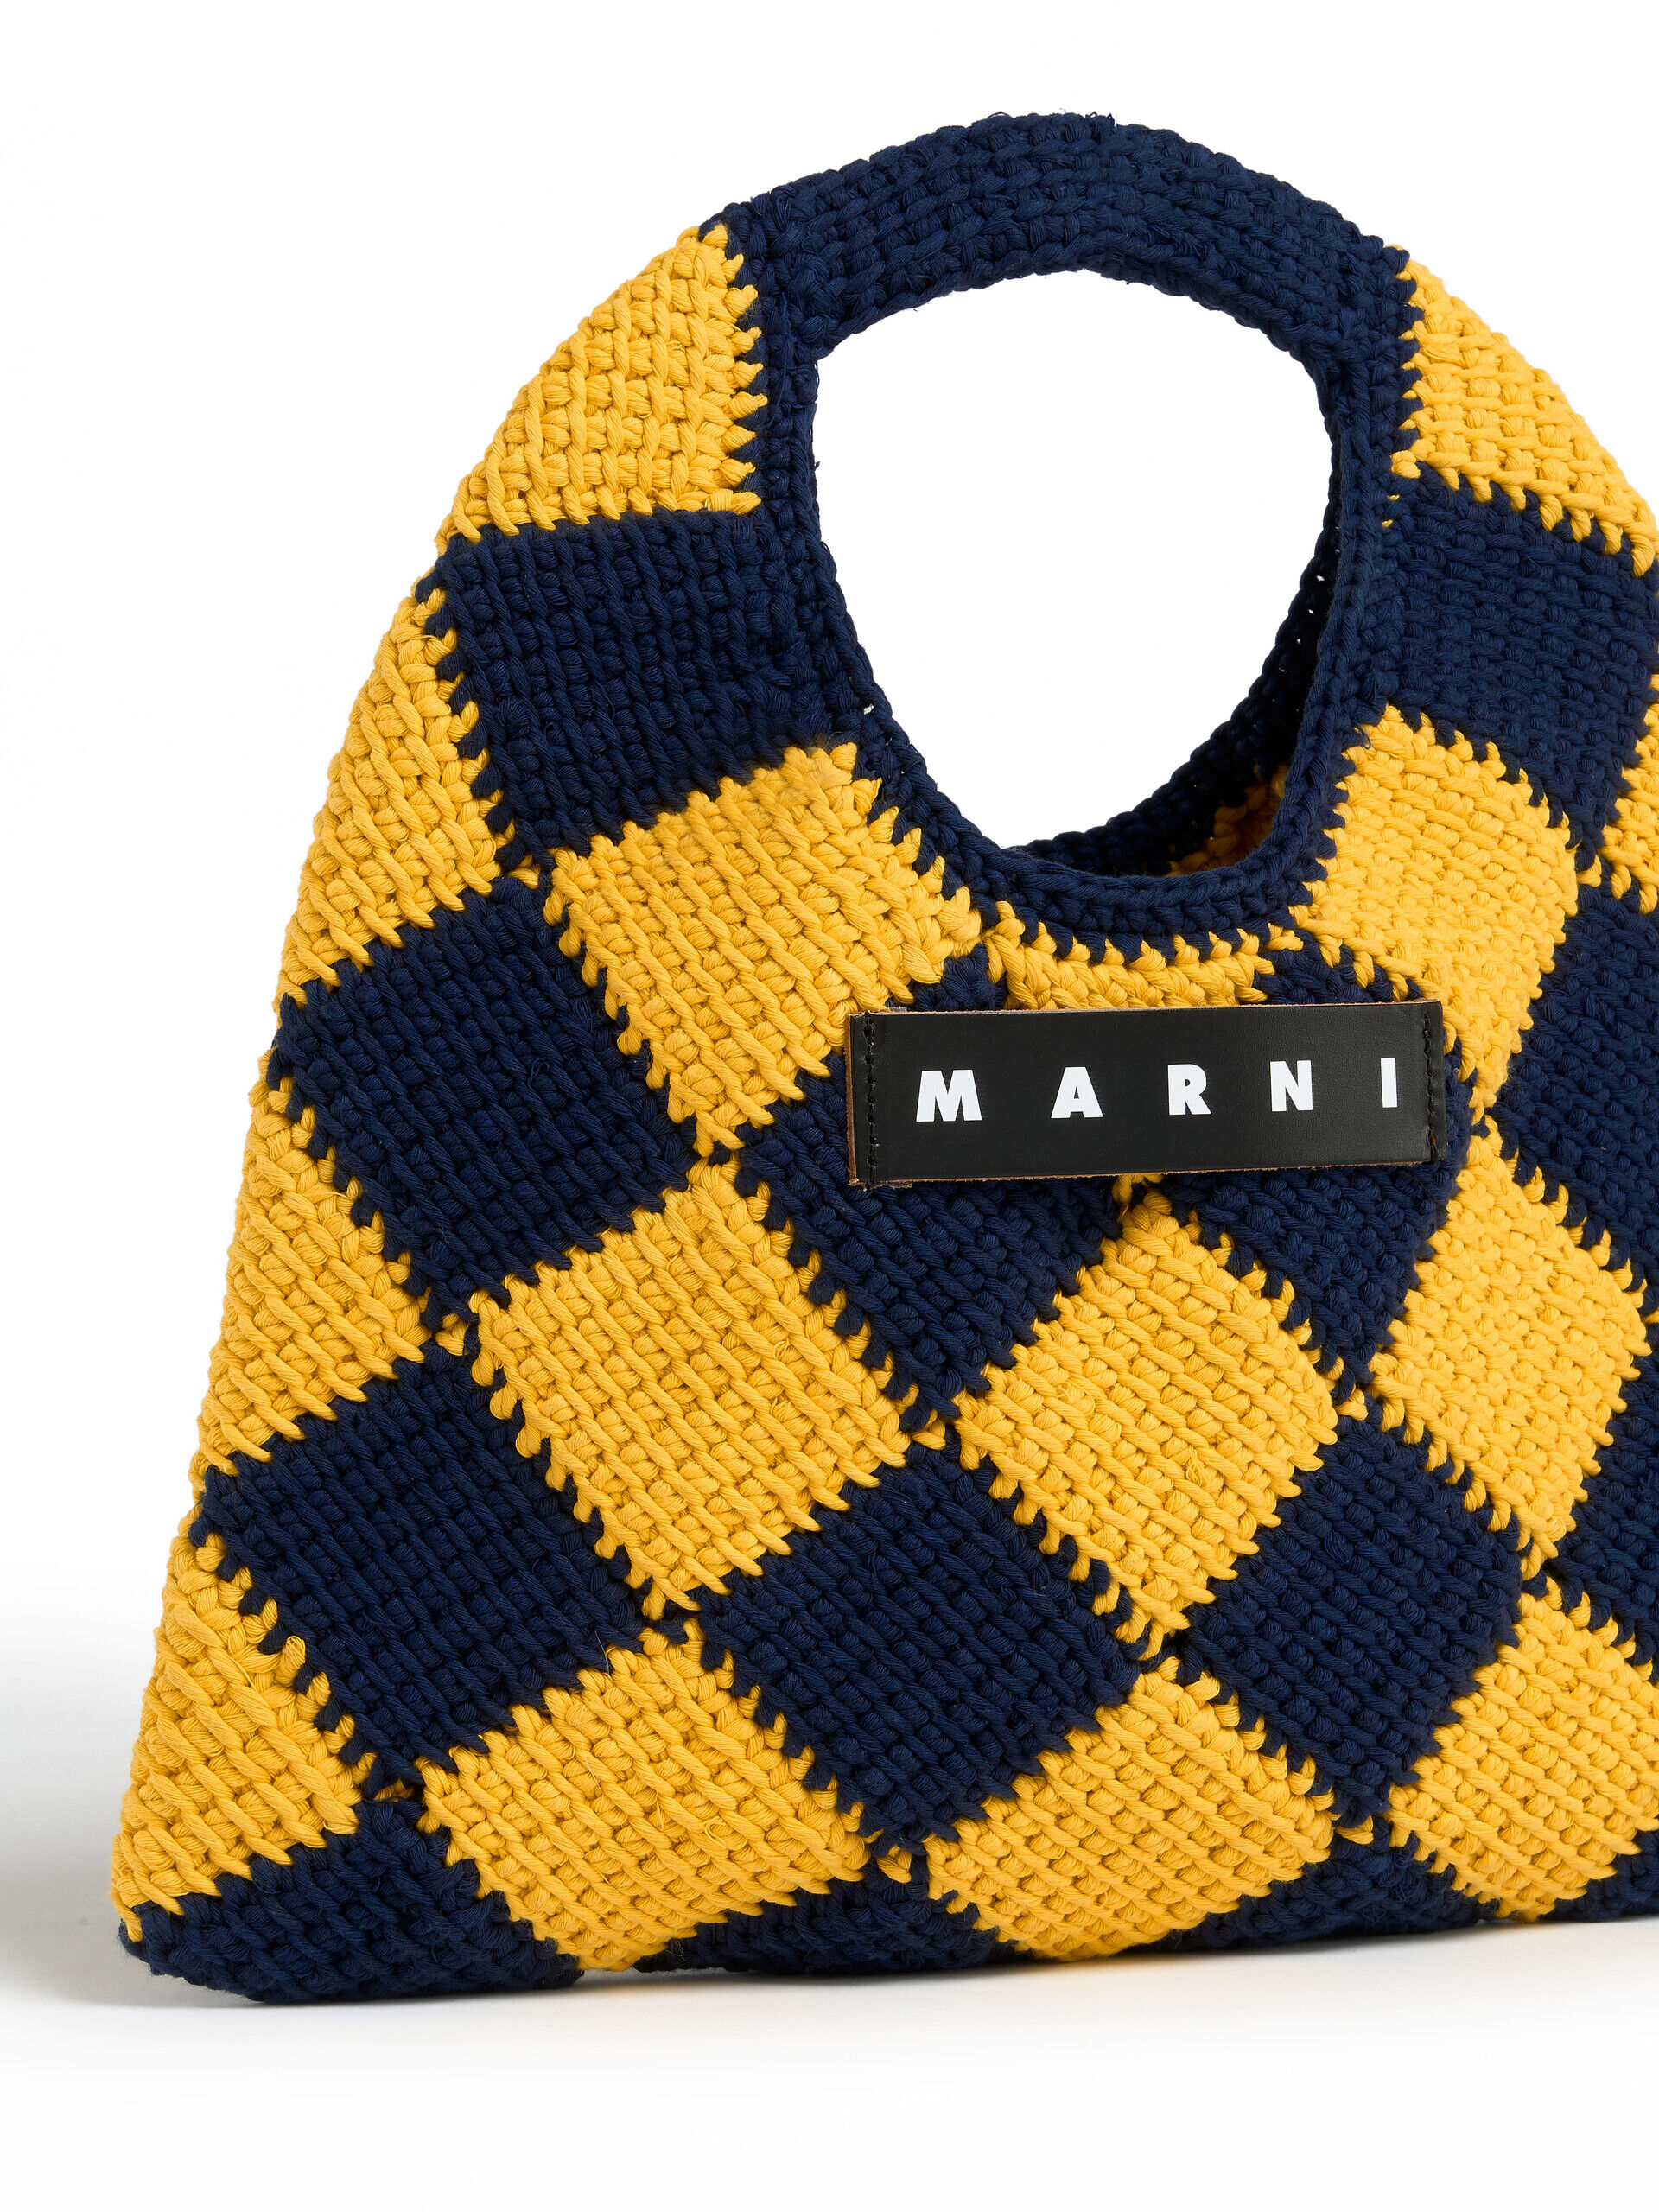 MARNI MARKET DIAMOND mini bag in yellow and blue tech wool | Marni